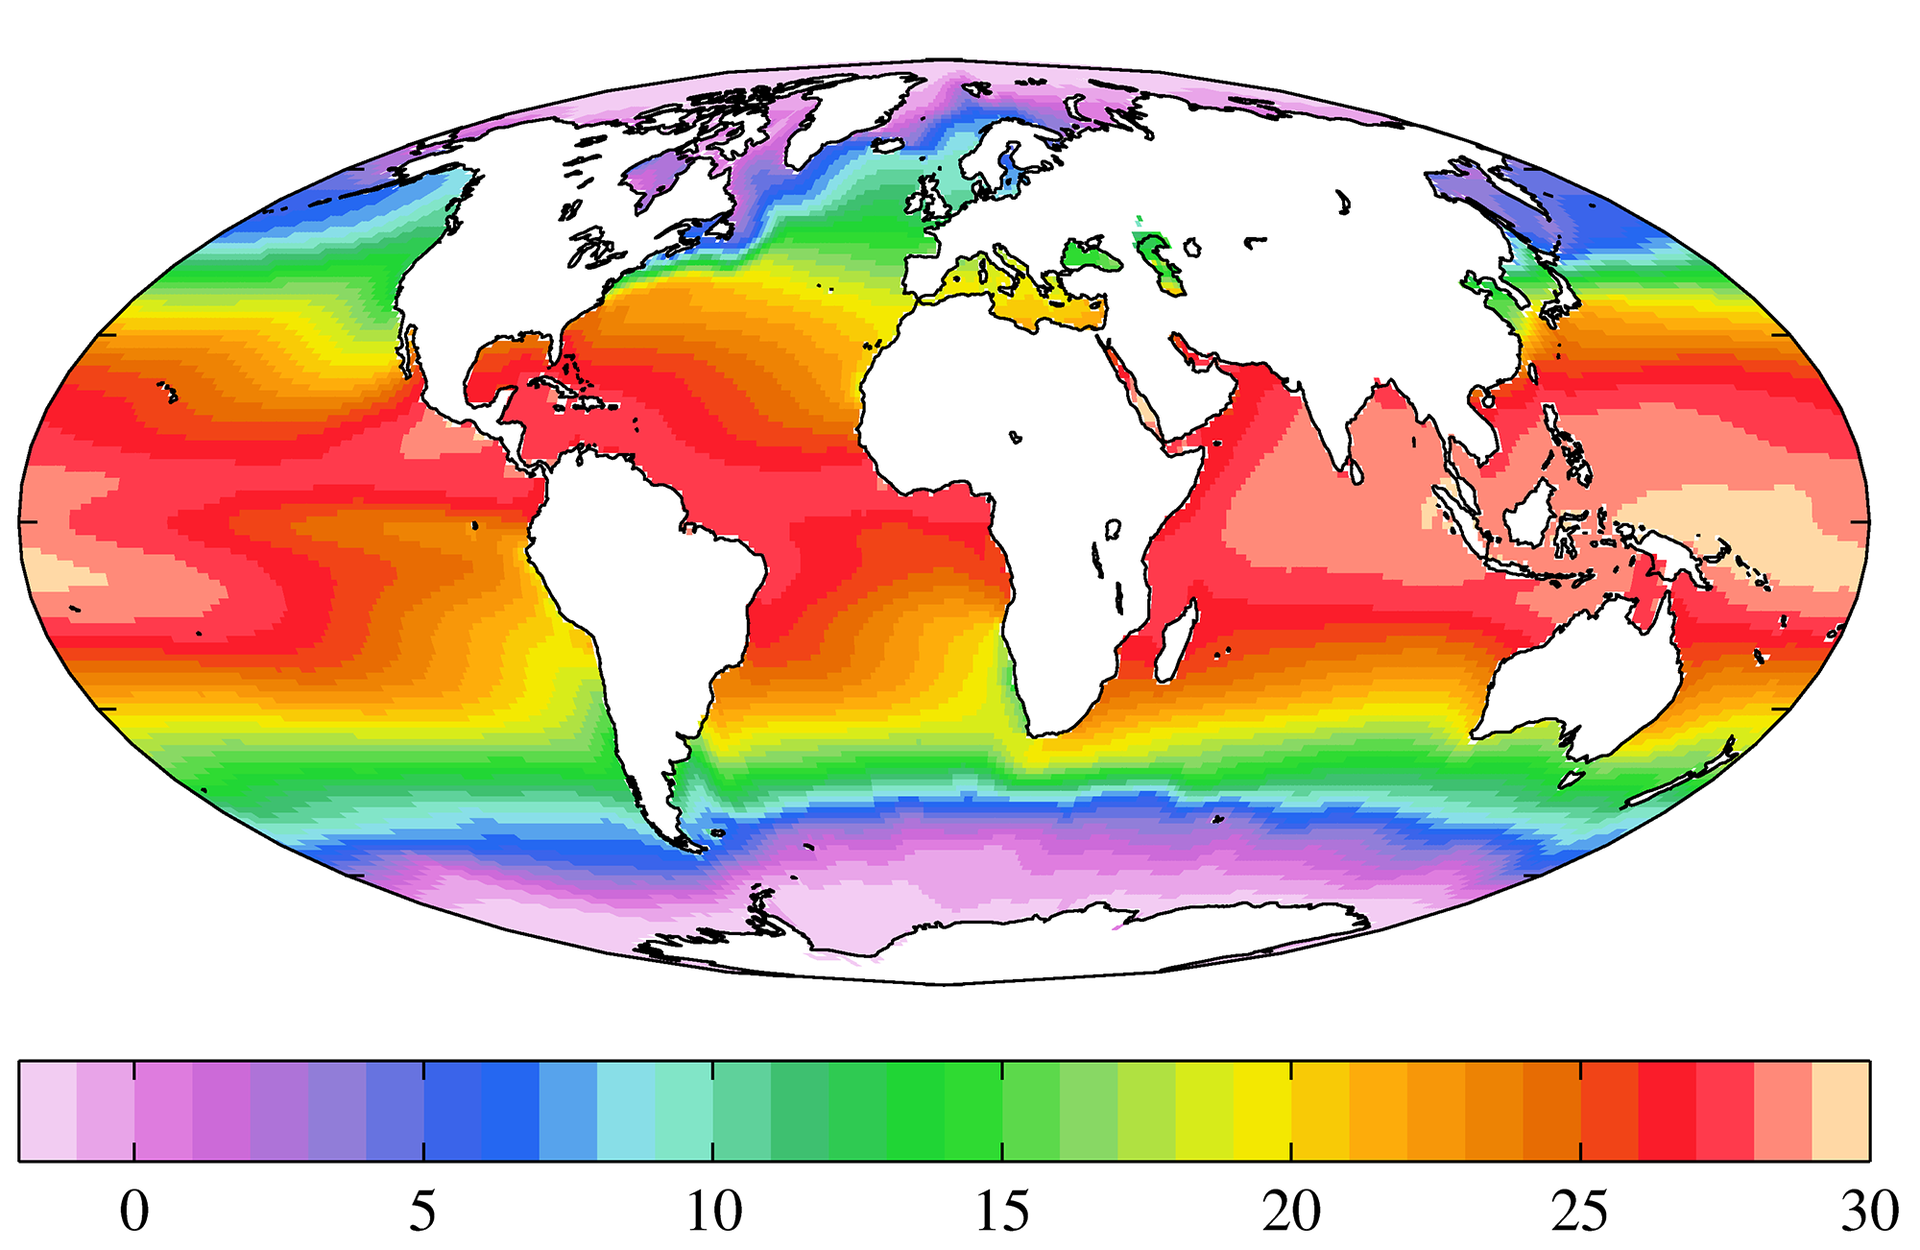 Ilustracja prezentuje mapę świata z zaznaczonymi temperaturami powierzchniowej warstwy wód morskich i oceanicznych w postaci różnych kolorów. Pod mapą znajduje się kolorowa podziałka z zaznaczonymi temperaturami co pięć stopni od 0°C do 30°C. Każdy przedział jest oznaczony innym kolorem z gradacją odcieni. Kolejne kolory począwszy od 0°C to: fioletowy, niebieski, zielony, żółty, pomarańczowy, czerwony. Wody zimne o temp. od 0°C do 5°C w kolorze fioletowym i niebieskim znajdują się wokół biegunów oraz kontynentów, które do nich przylegają. Następnie kolor niebieski, to wody o temp. od 5°C do 10°C w strefie umiarkowanej na obydwu półkulach, kolejny kolor zielony, temp. od 10°C do 15°C, żółty temp. od 15°C do 20°C, a na równiku i w strefie międzyzwrotnikowej kolor czerwony, temp. od 25°C do 30°C. Widać daę wykonania mapy - 5 lutego 2013.